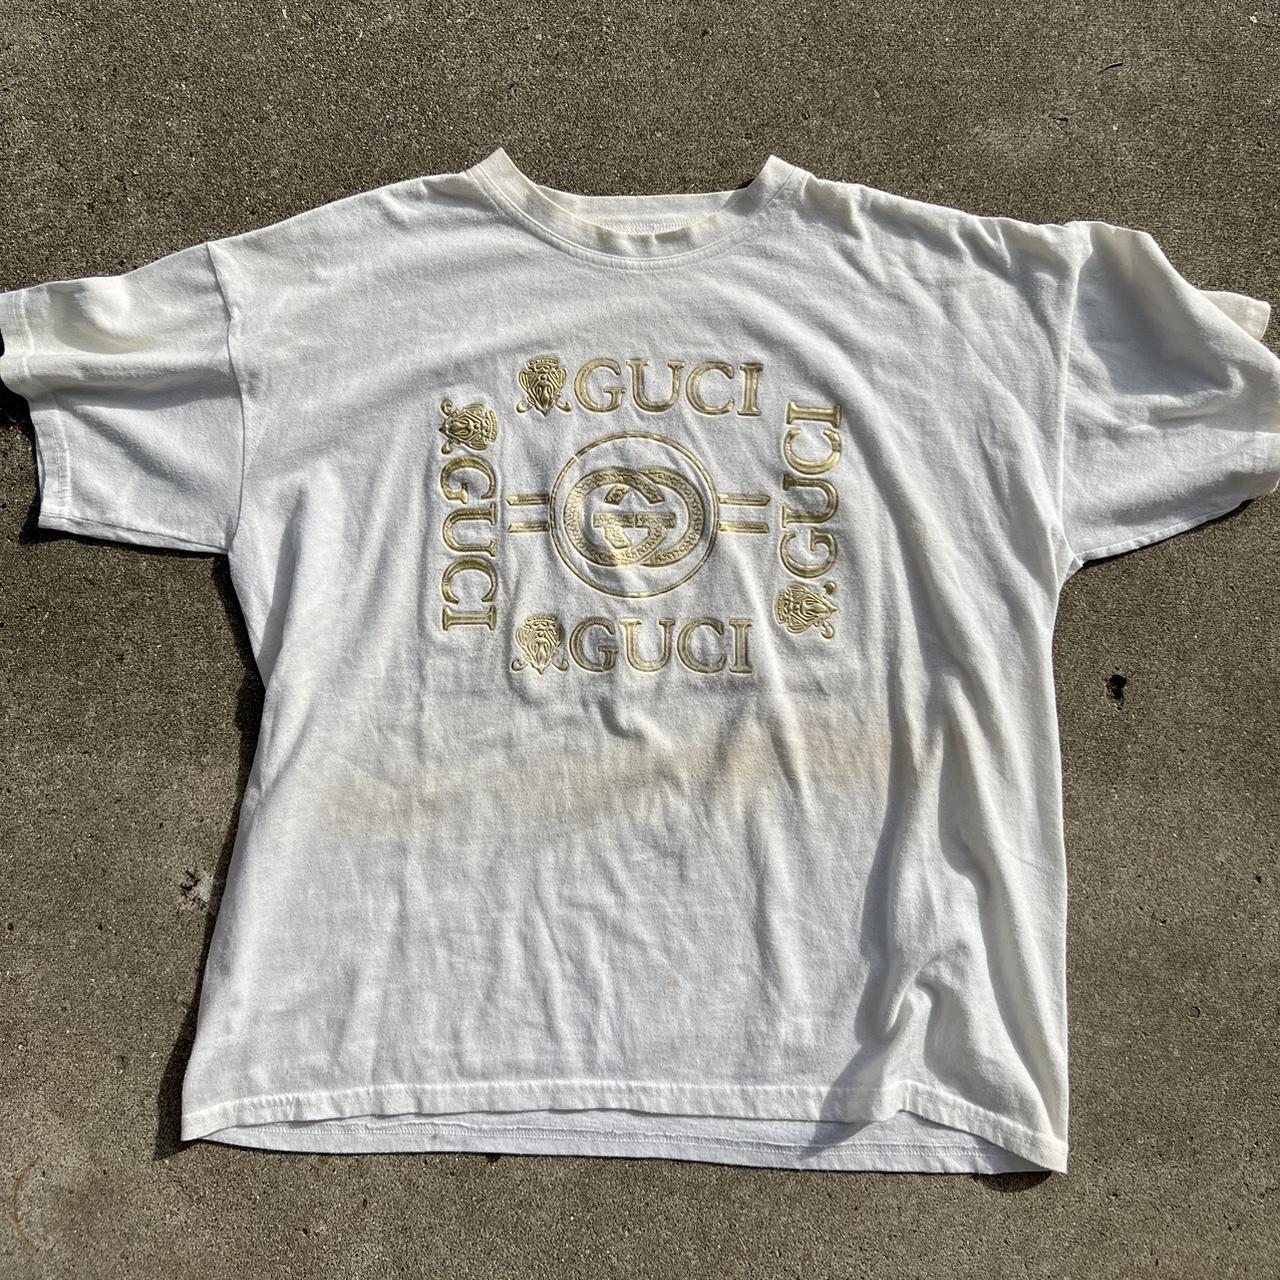 Gucci Men's T-shirt | Depop